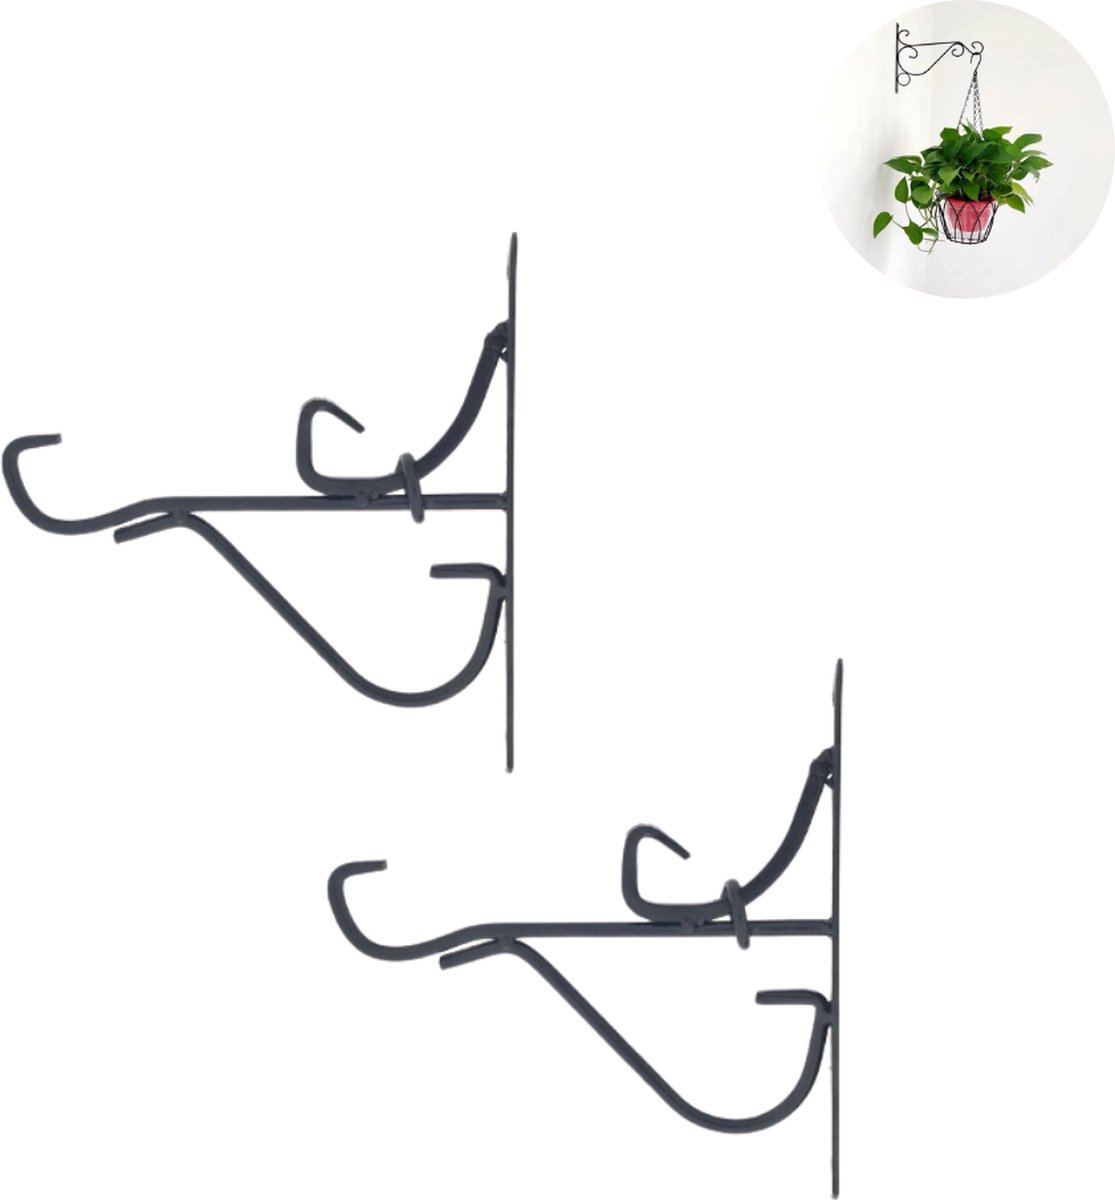 2x Plantenhaak buiten - Zwart - Muurhaak voor hanging basket - Plantenbakhaken metaal - Planten - Plantenhanger - Decoratie buiten - Tuin - Schutting - Wanddecoratie